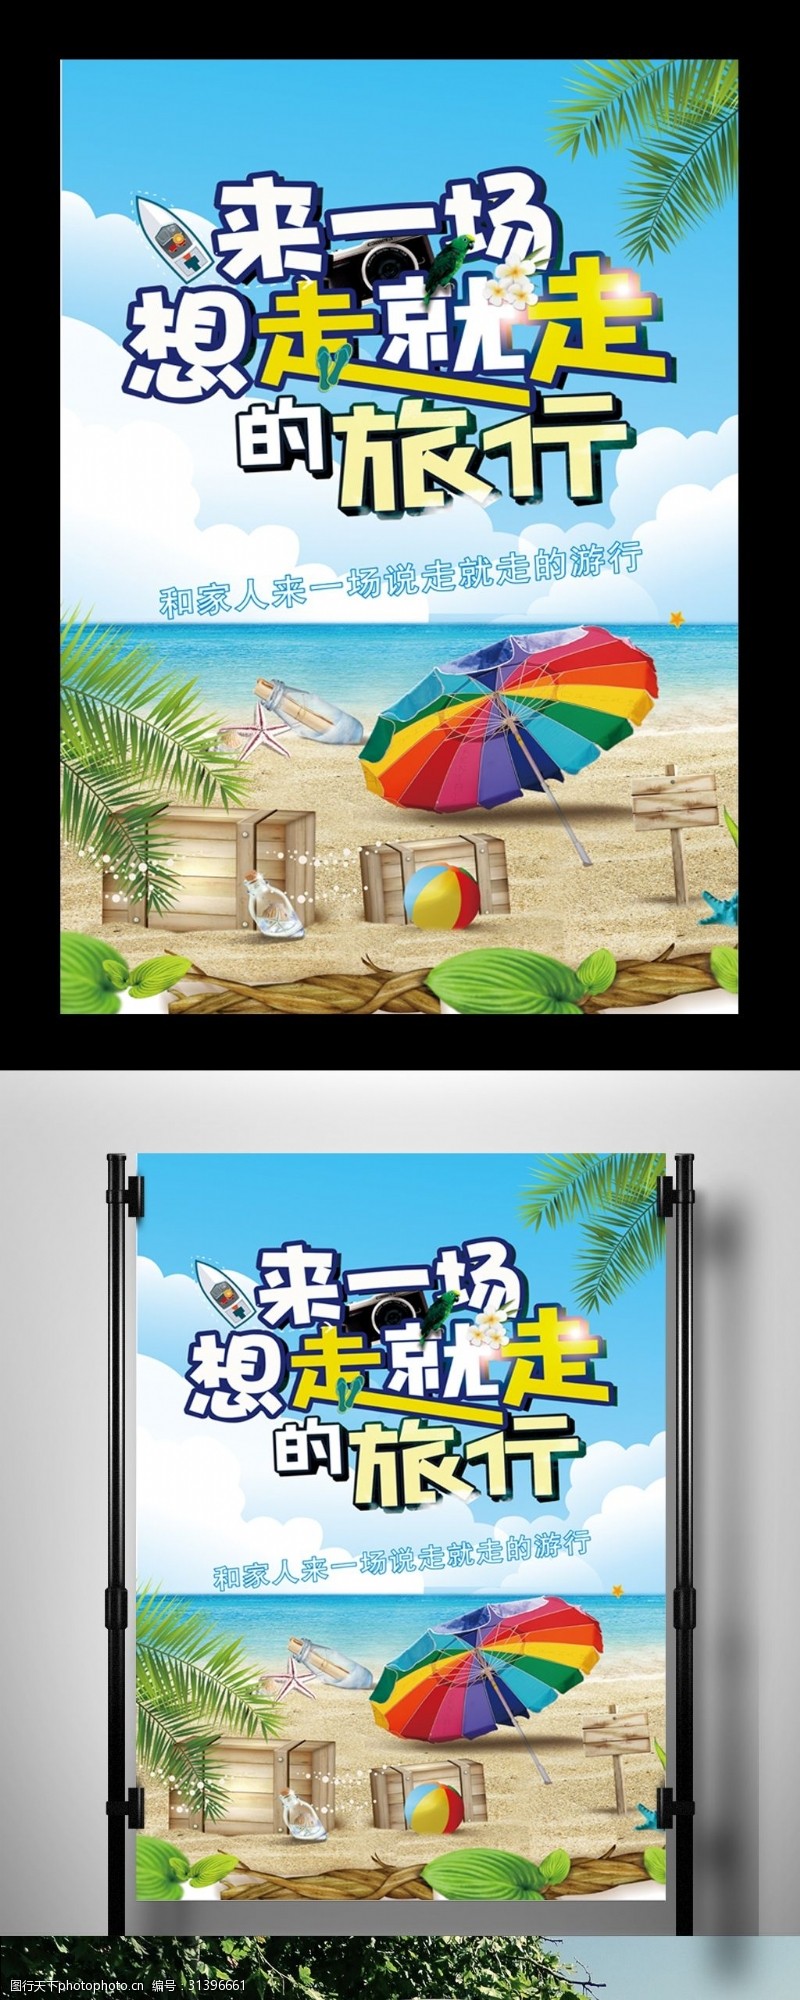 带你去旅行2017年小清新海边旅游海报设计